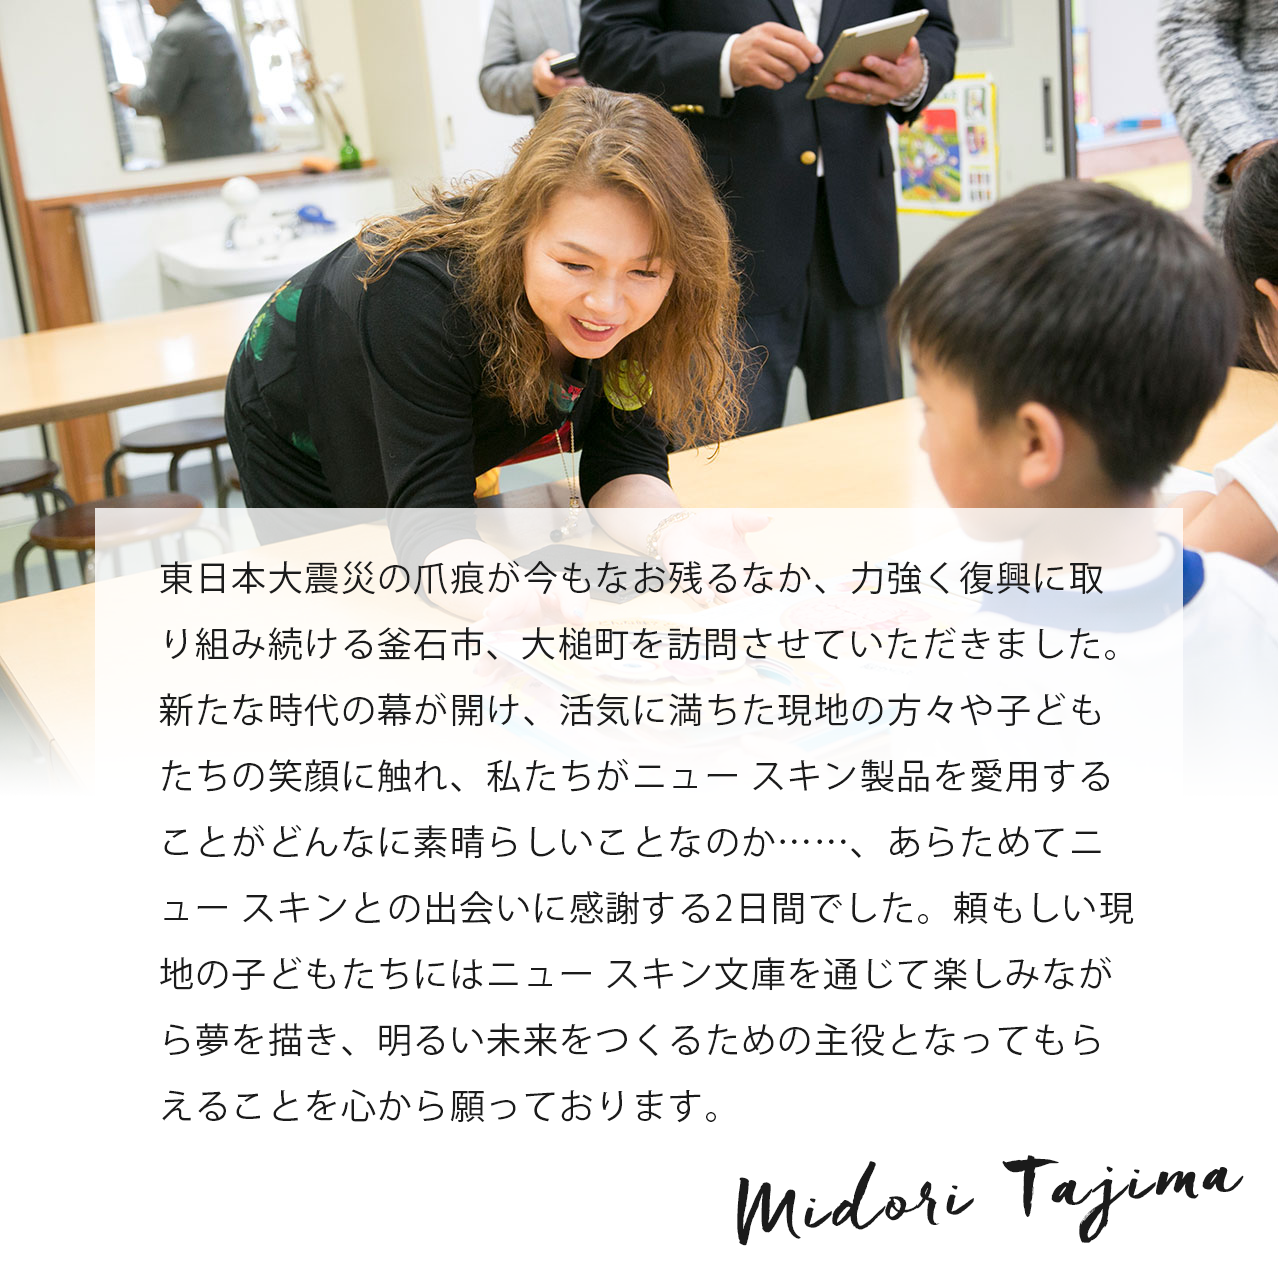 被災地に初めて訪れ、現地の方々の心にはまだまだ震災の傷が残っていることに気づかされました。一方で小学校へ図書や文房具をプレゼントしたときの子どもたちの嬉しそうな笑顔に明るい未来を感じました。この活動の意義がそこにあると思います。 Midori Tajima